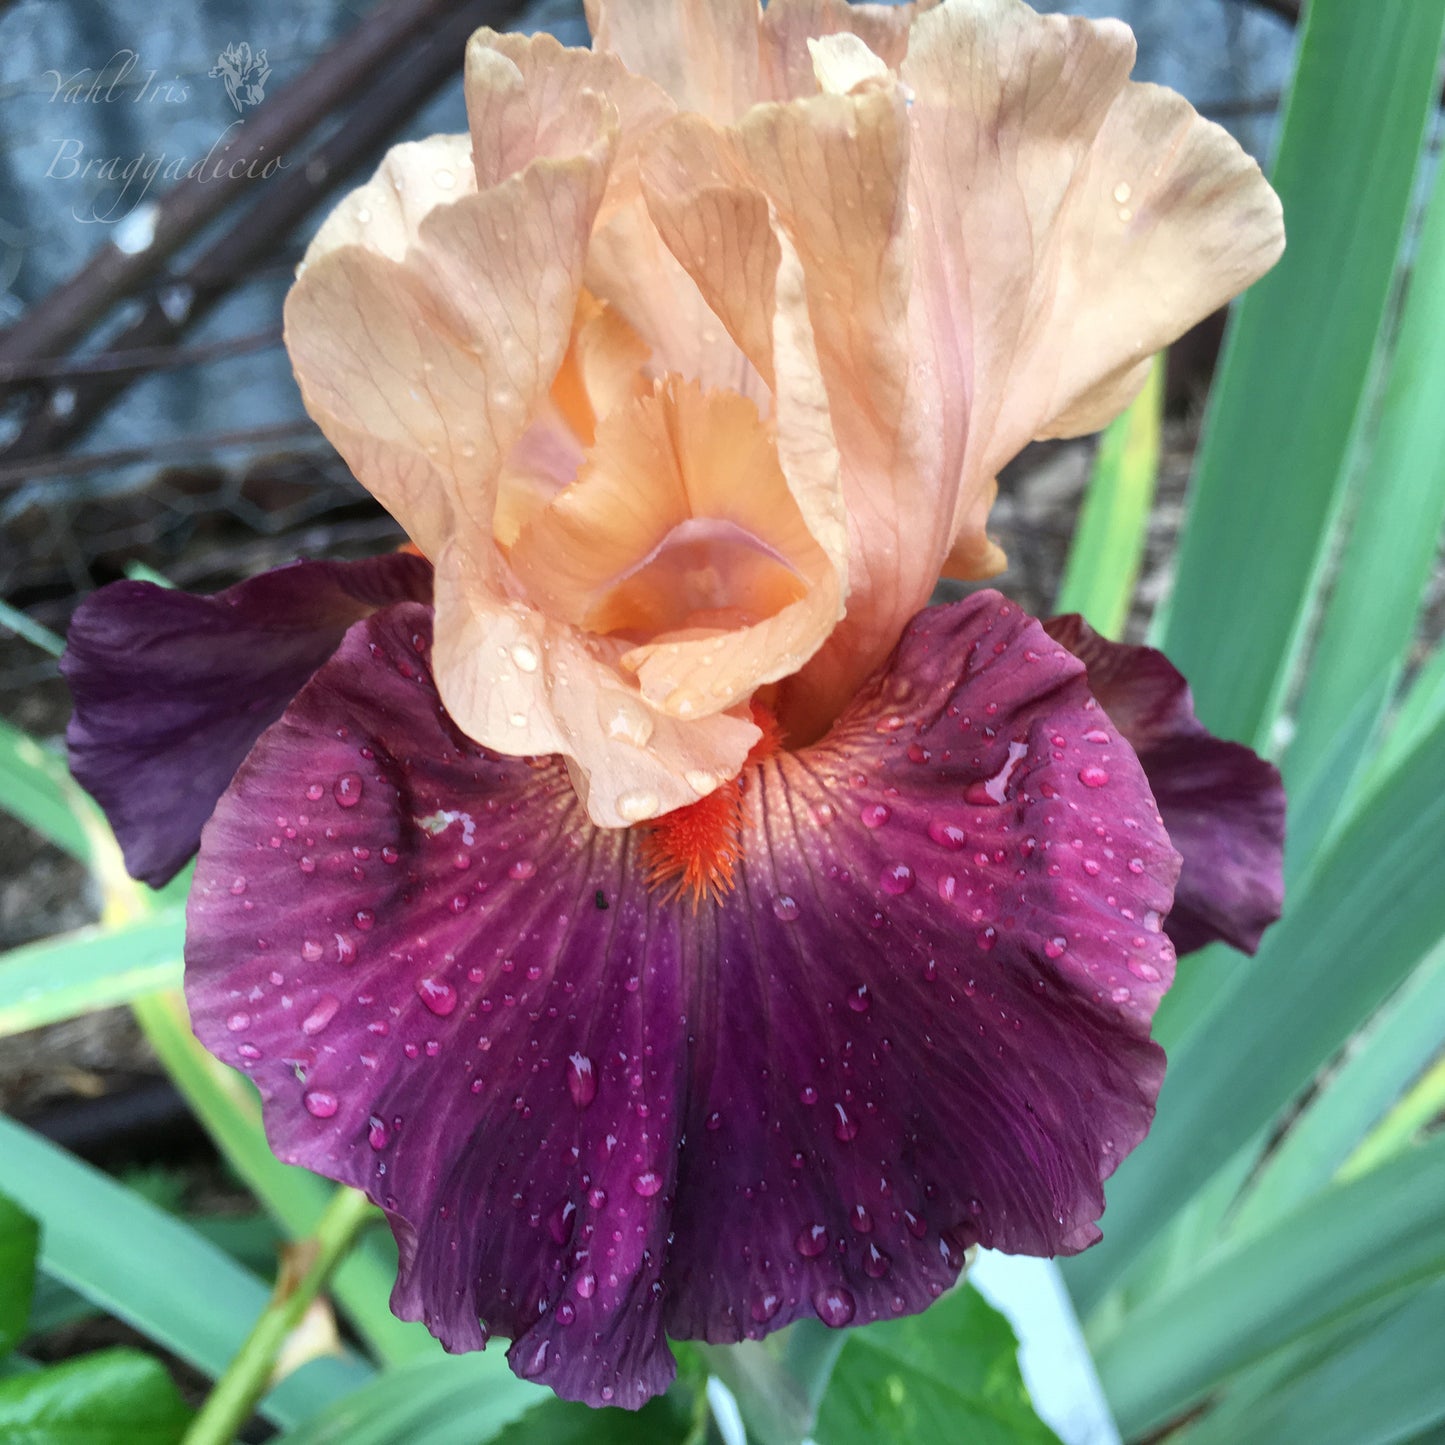 Braggadicio - Tall Bearded Iris